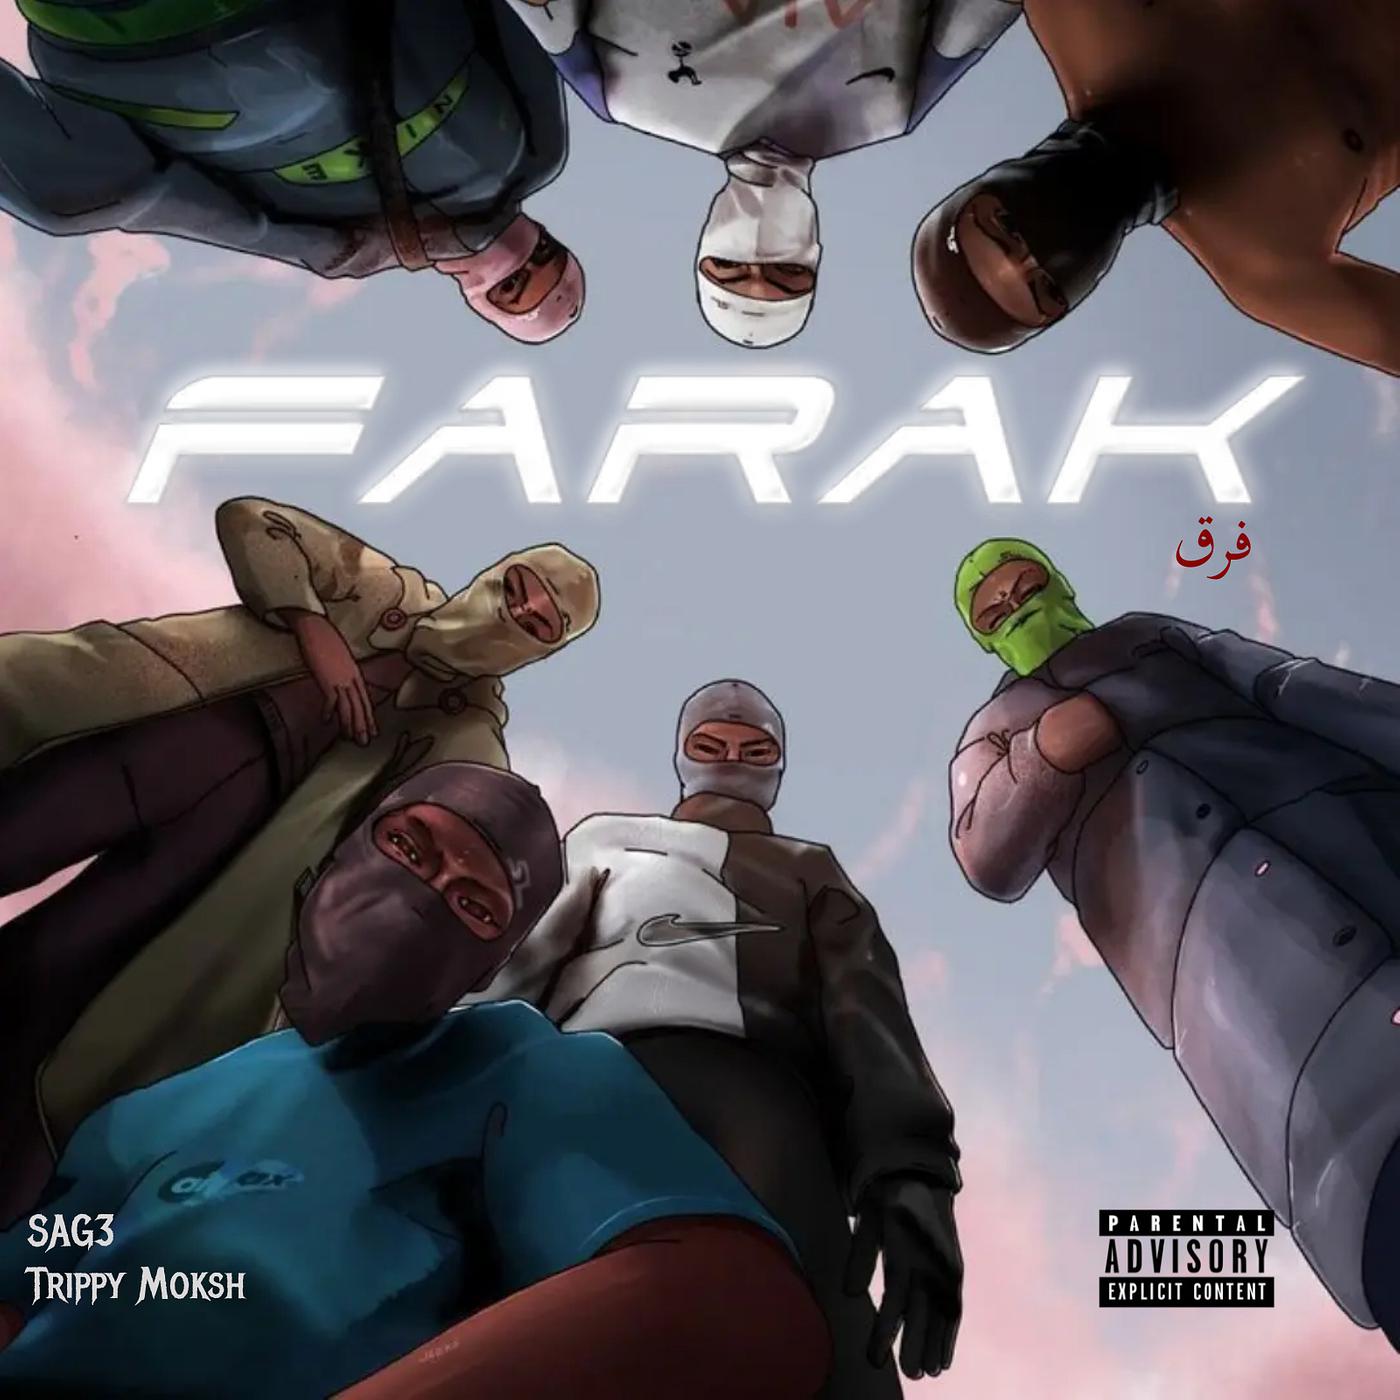 Постер альбома Farak